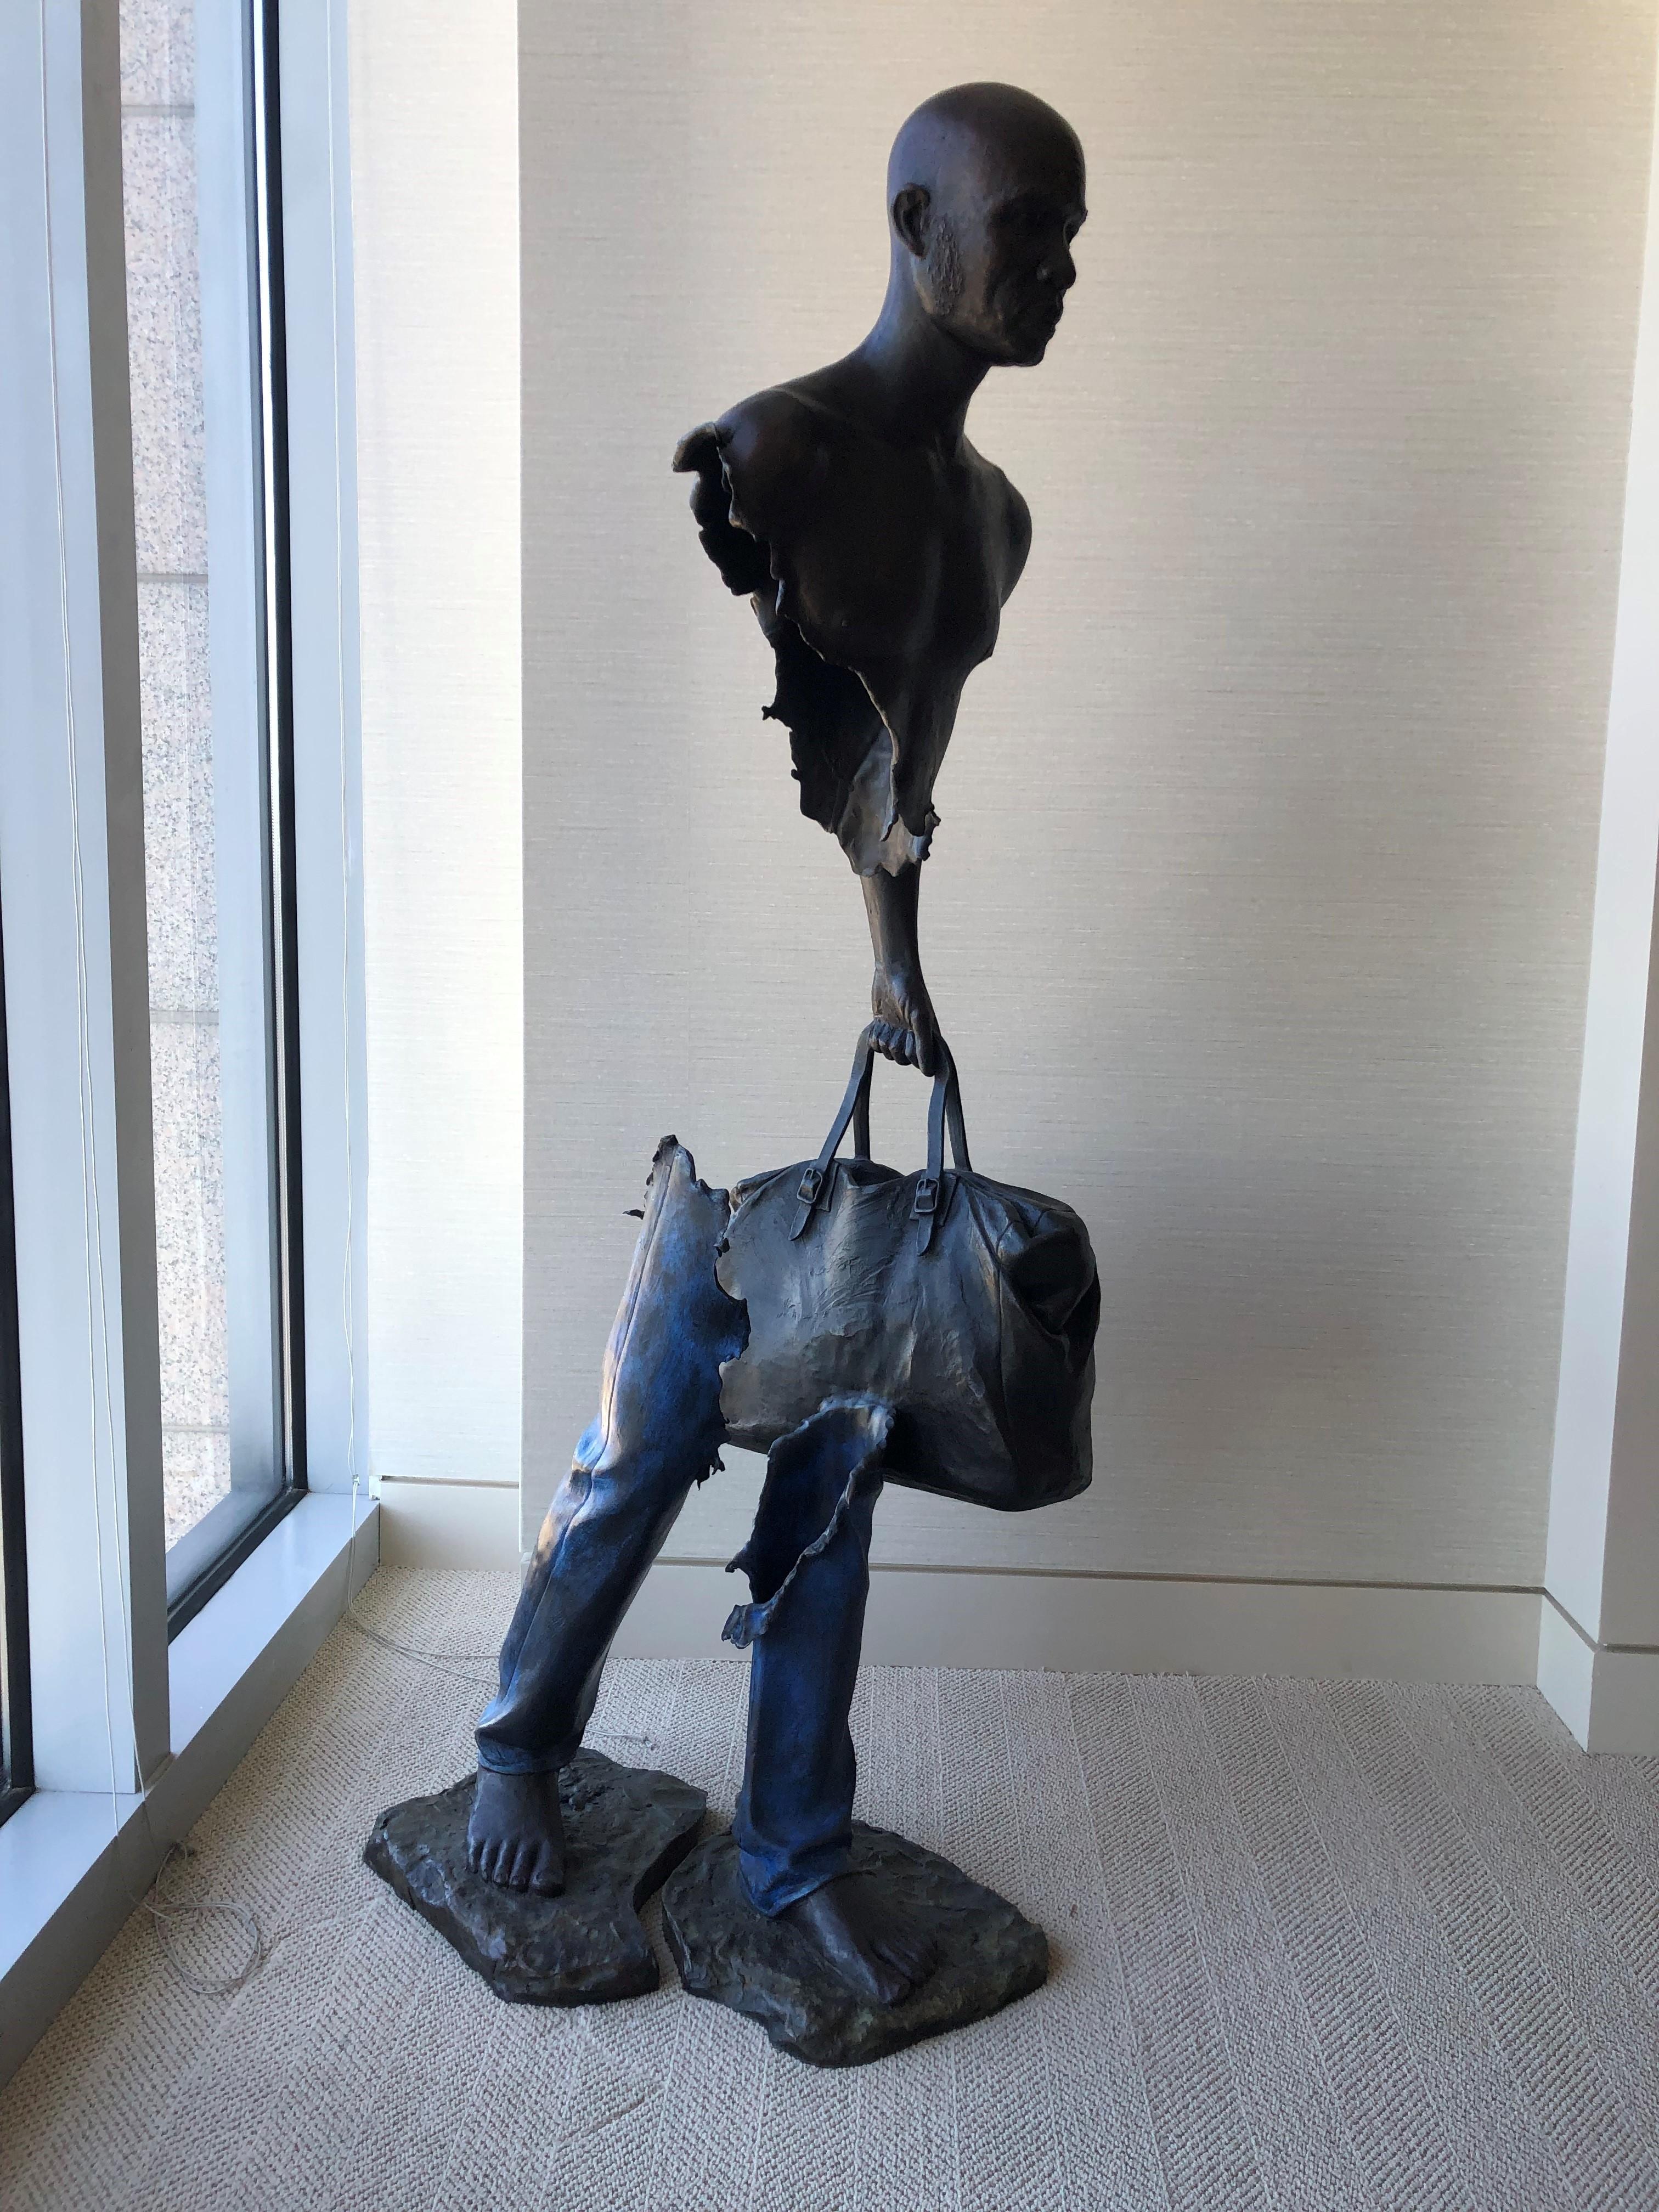 Ouvrir les Frontières pour M. Olingou - Sculpture de Bruno CATALANO